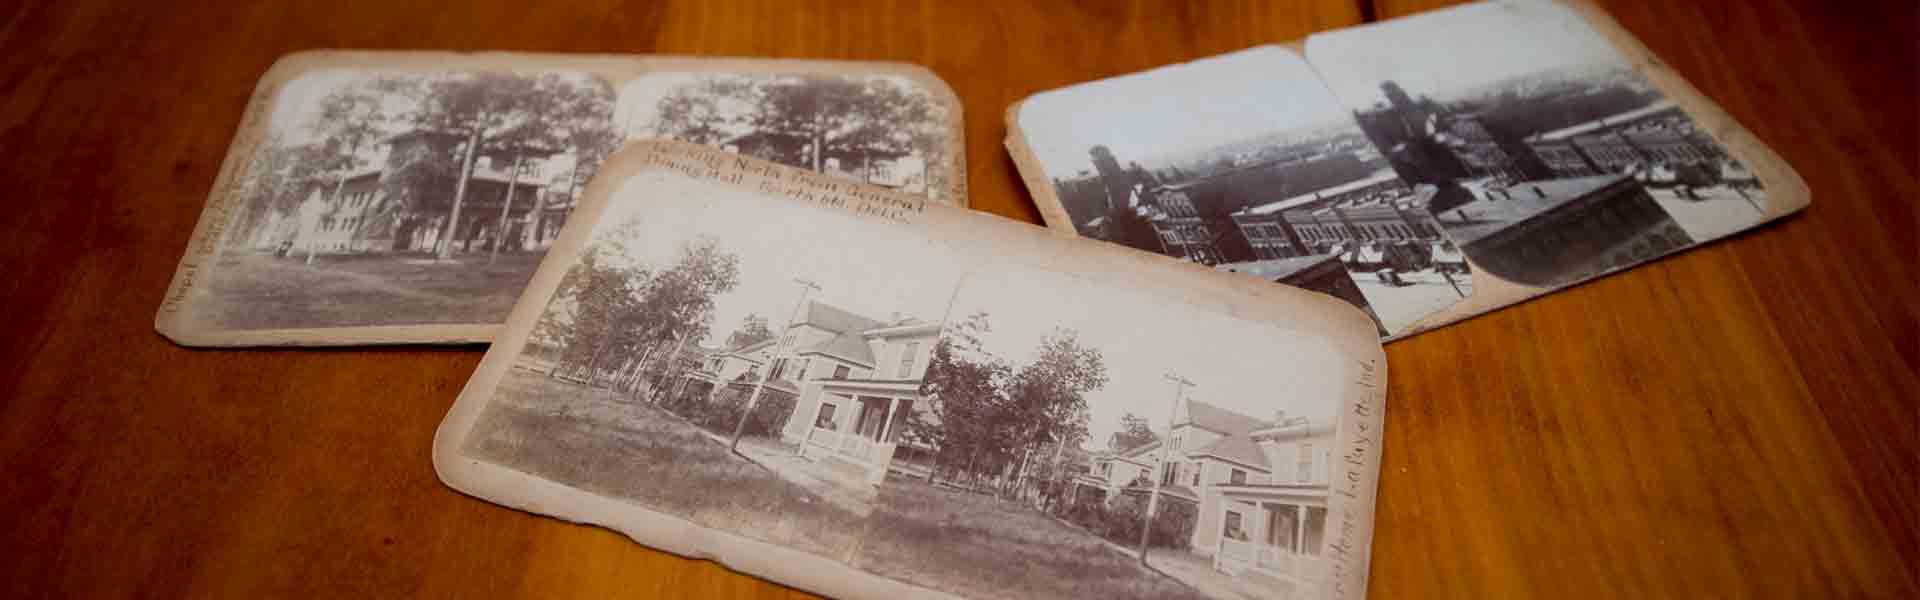 Three old postcards on table